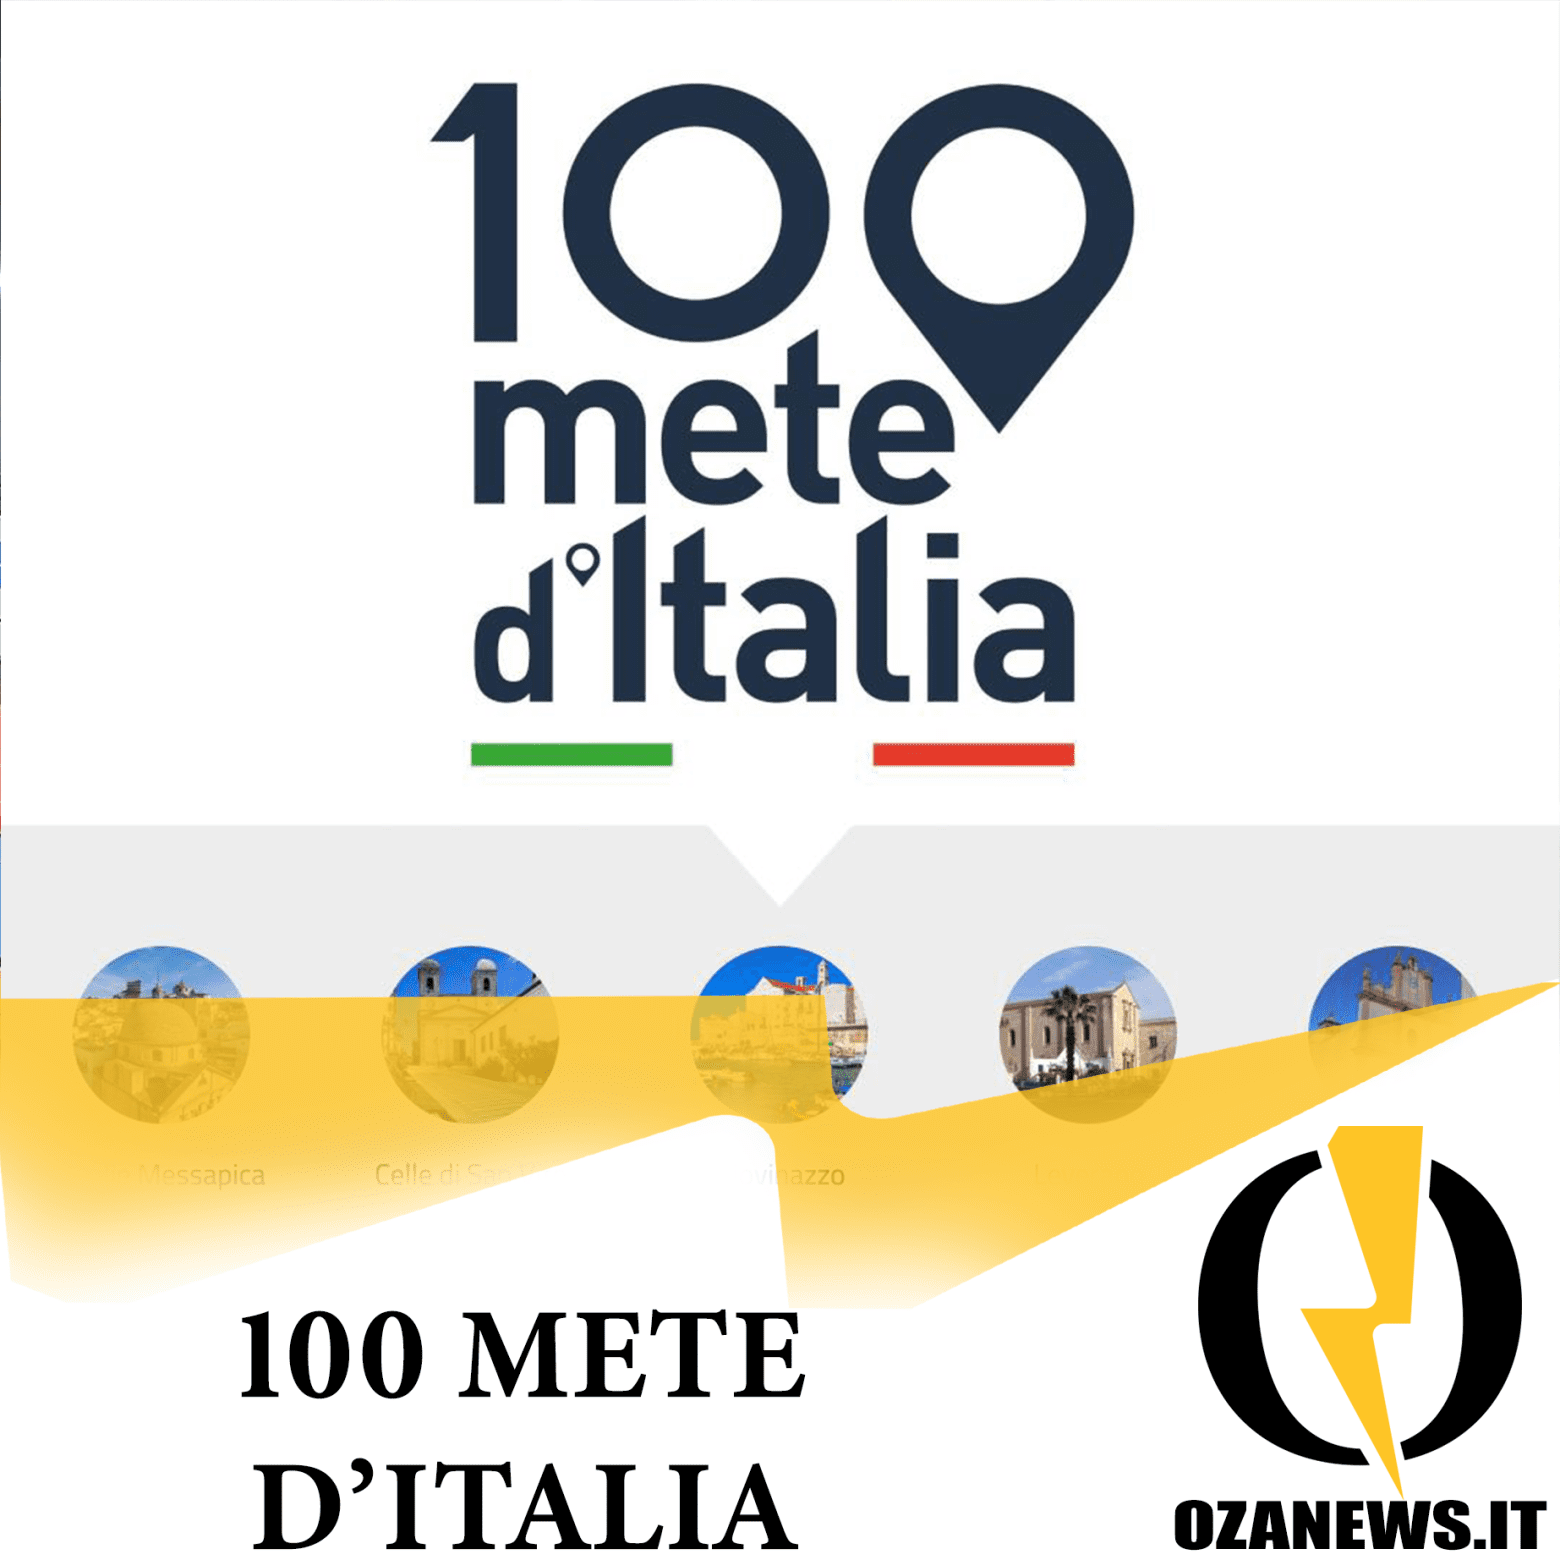 100 mete d'italia